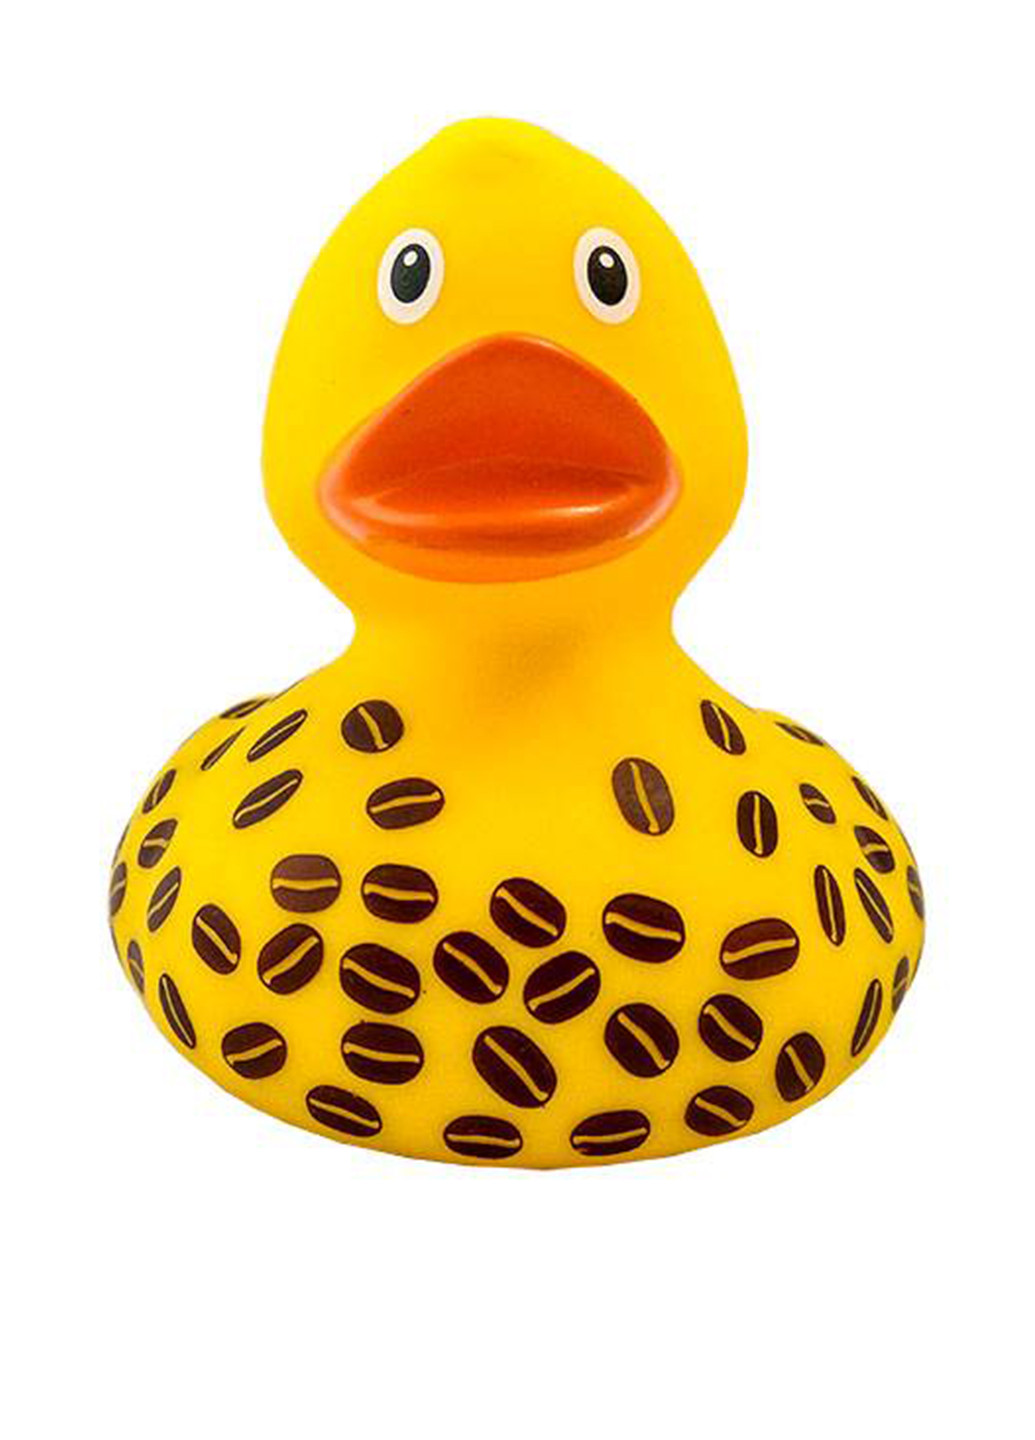 Іграшка для купання Качка Кава, 8,5x8,5x7,5 см Funny Ducks (250618789)